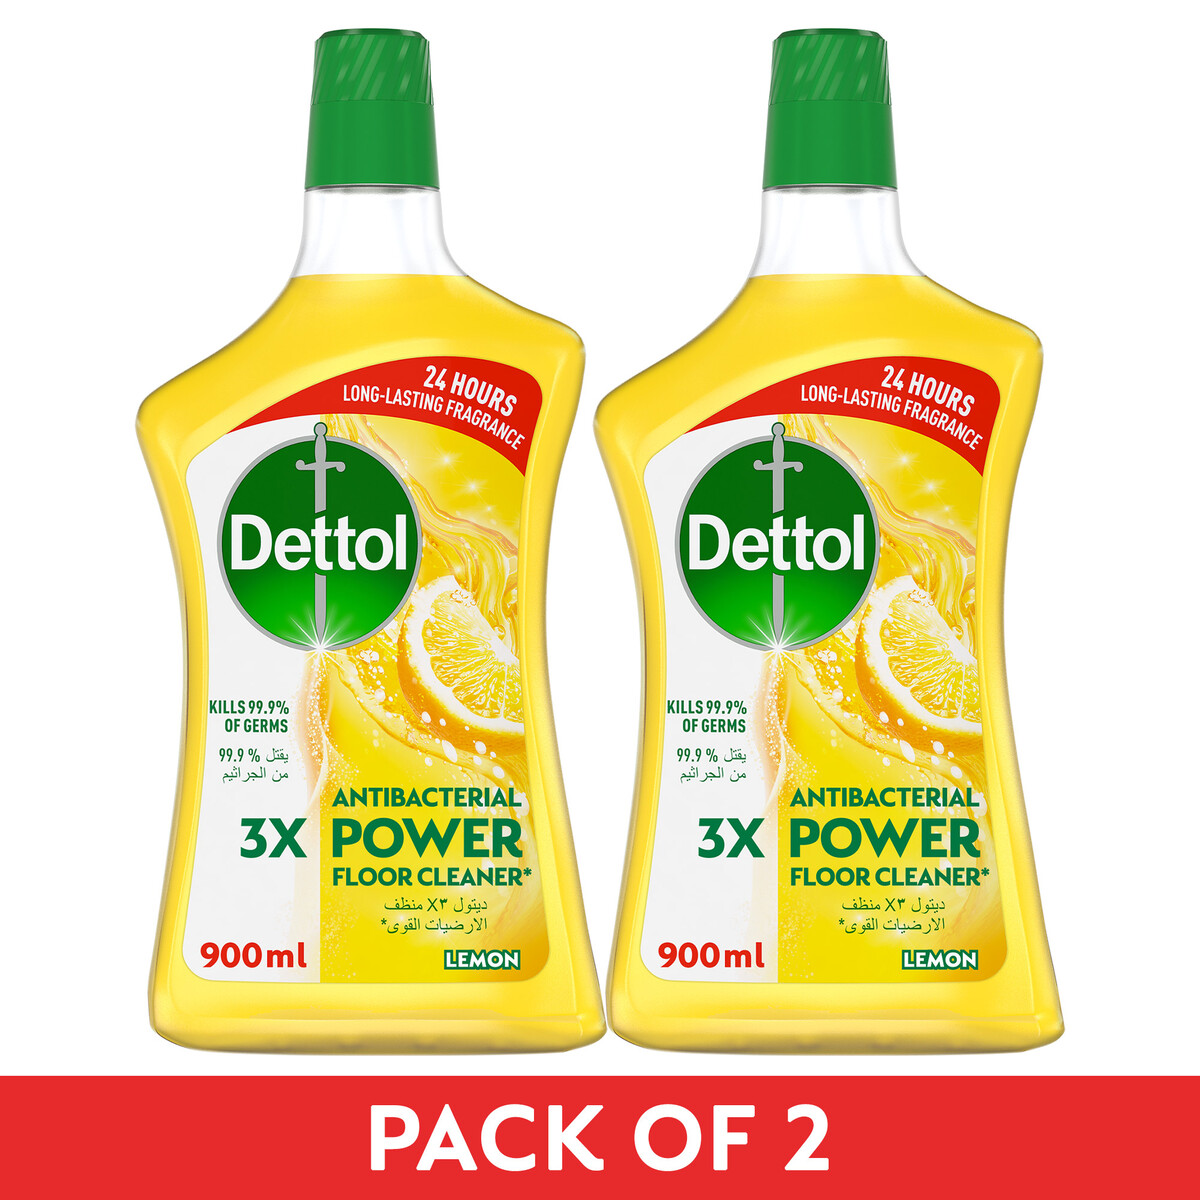 Buy Dettol Lemon Power Antibacterial Floor Cleaner Value Pack 2 x 900 ml Online at Best Price | All Purpose Cleaner | Lulu UAE in UAE